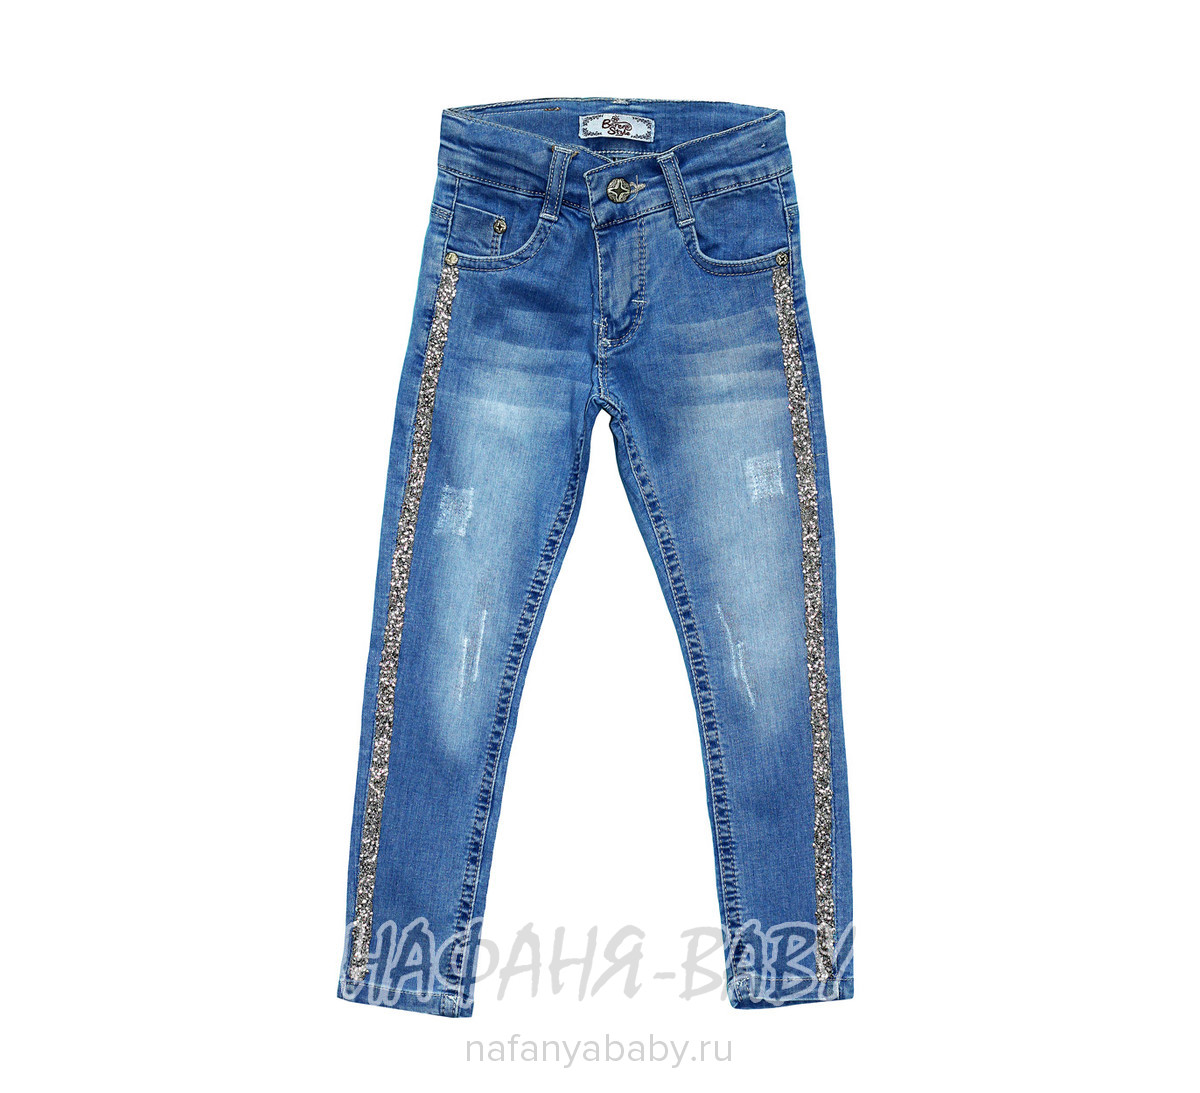 Детские джинсы BEREN STYLE арт: 8017, 1-4 года, 5-9 лет, оптом Турция